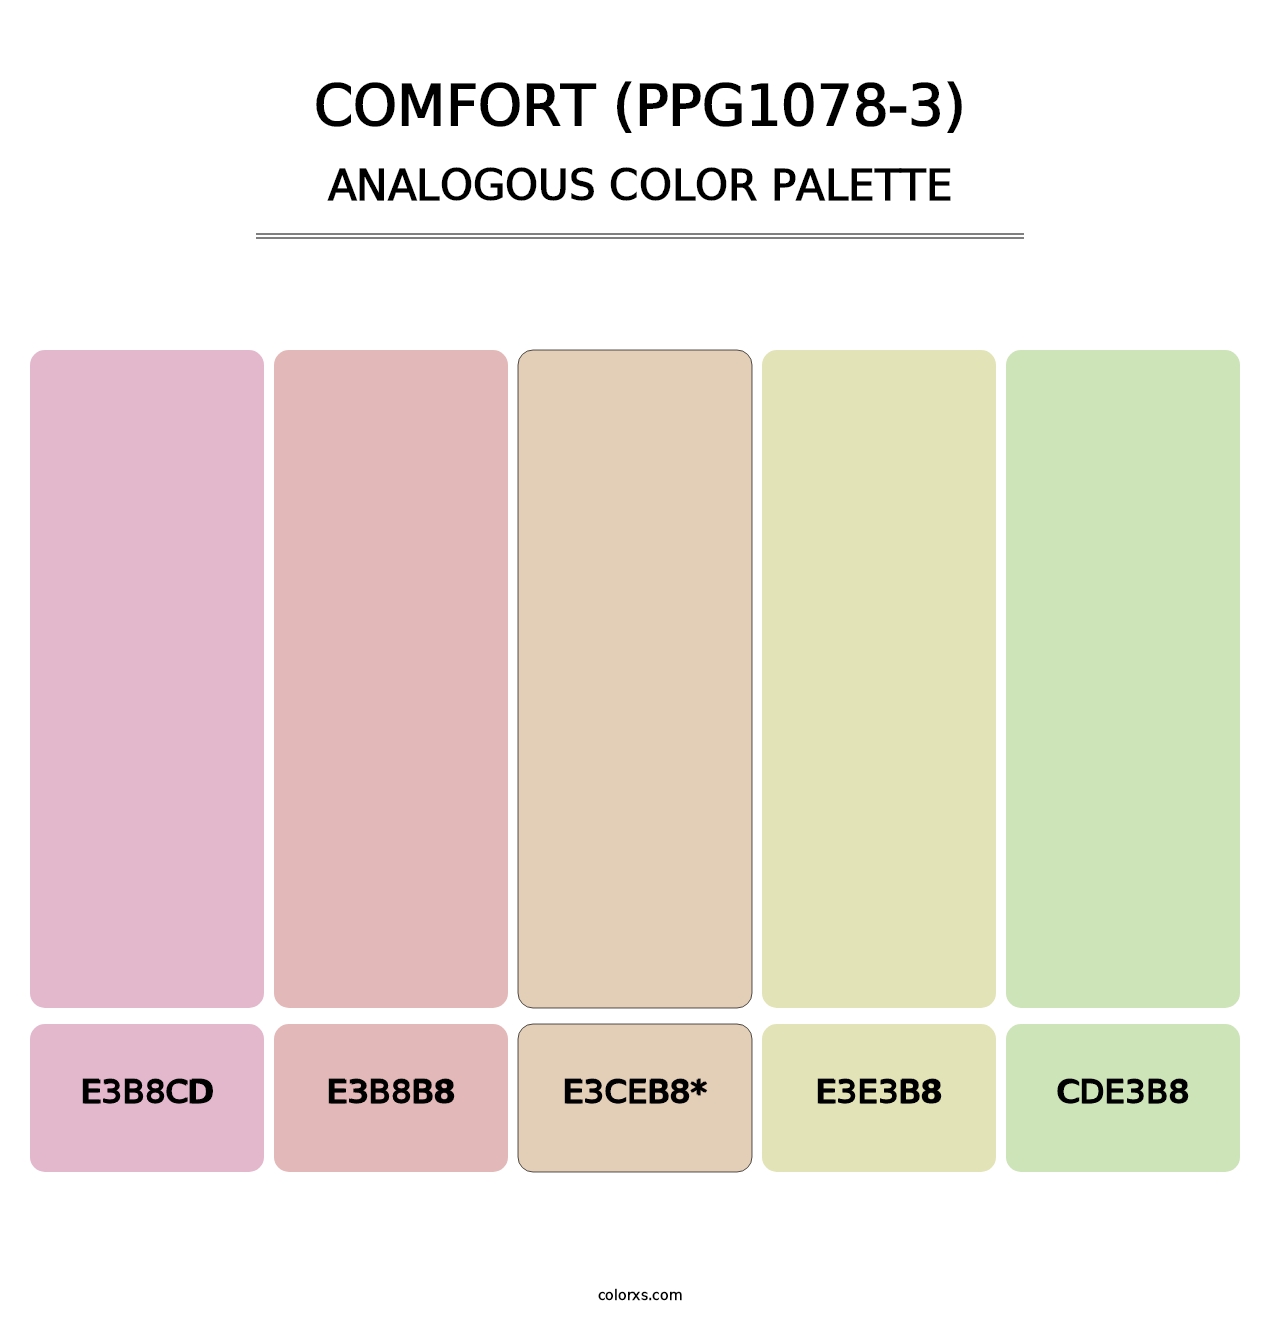 Comfort (PPG1078-3) - Analogous Color Palette